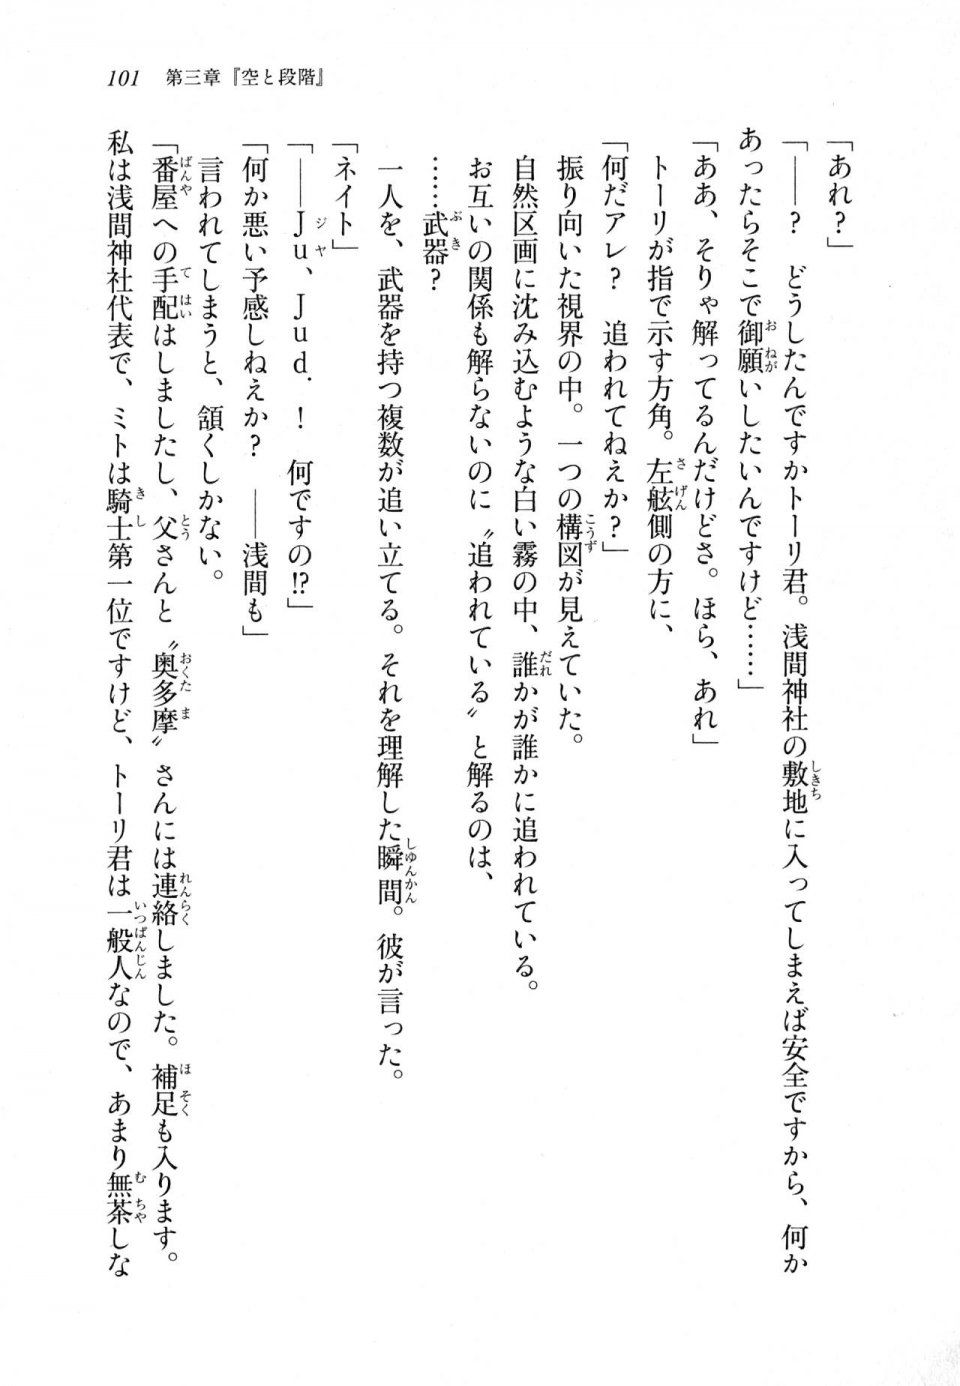 Kyoukai Senjou no Horizon LN Sidestory Vol 1 - Photo #99